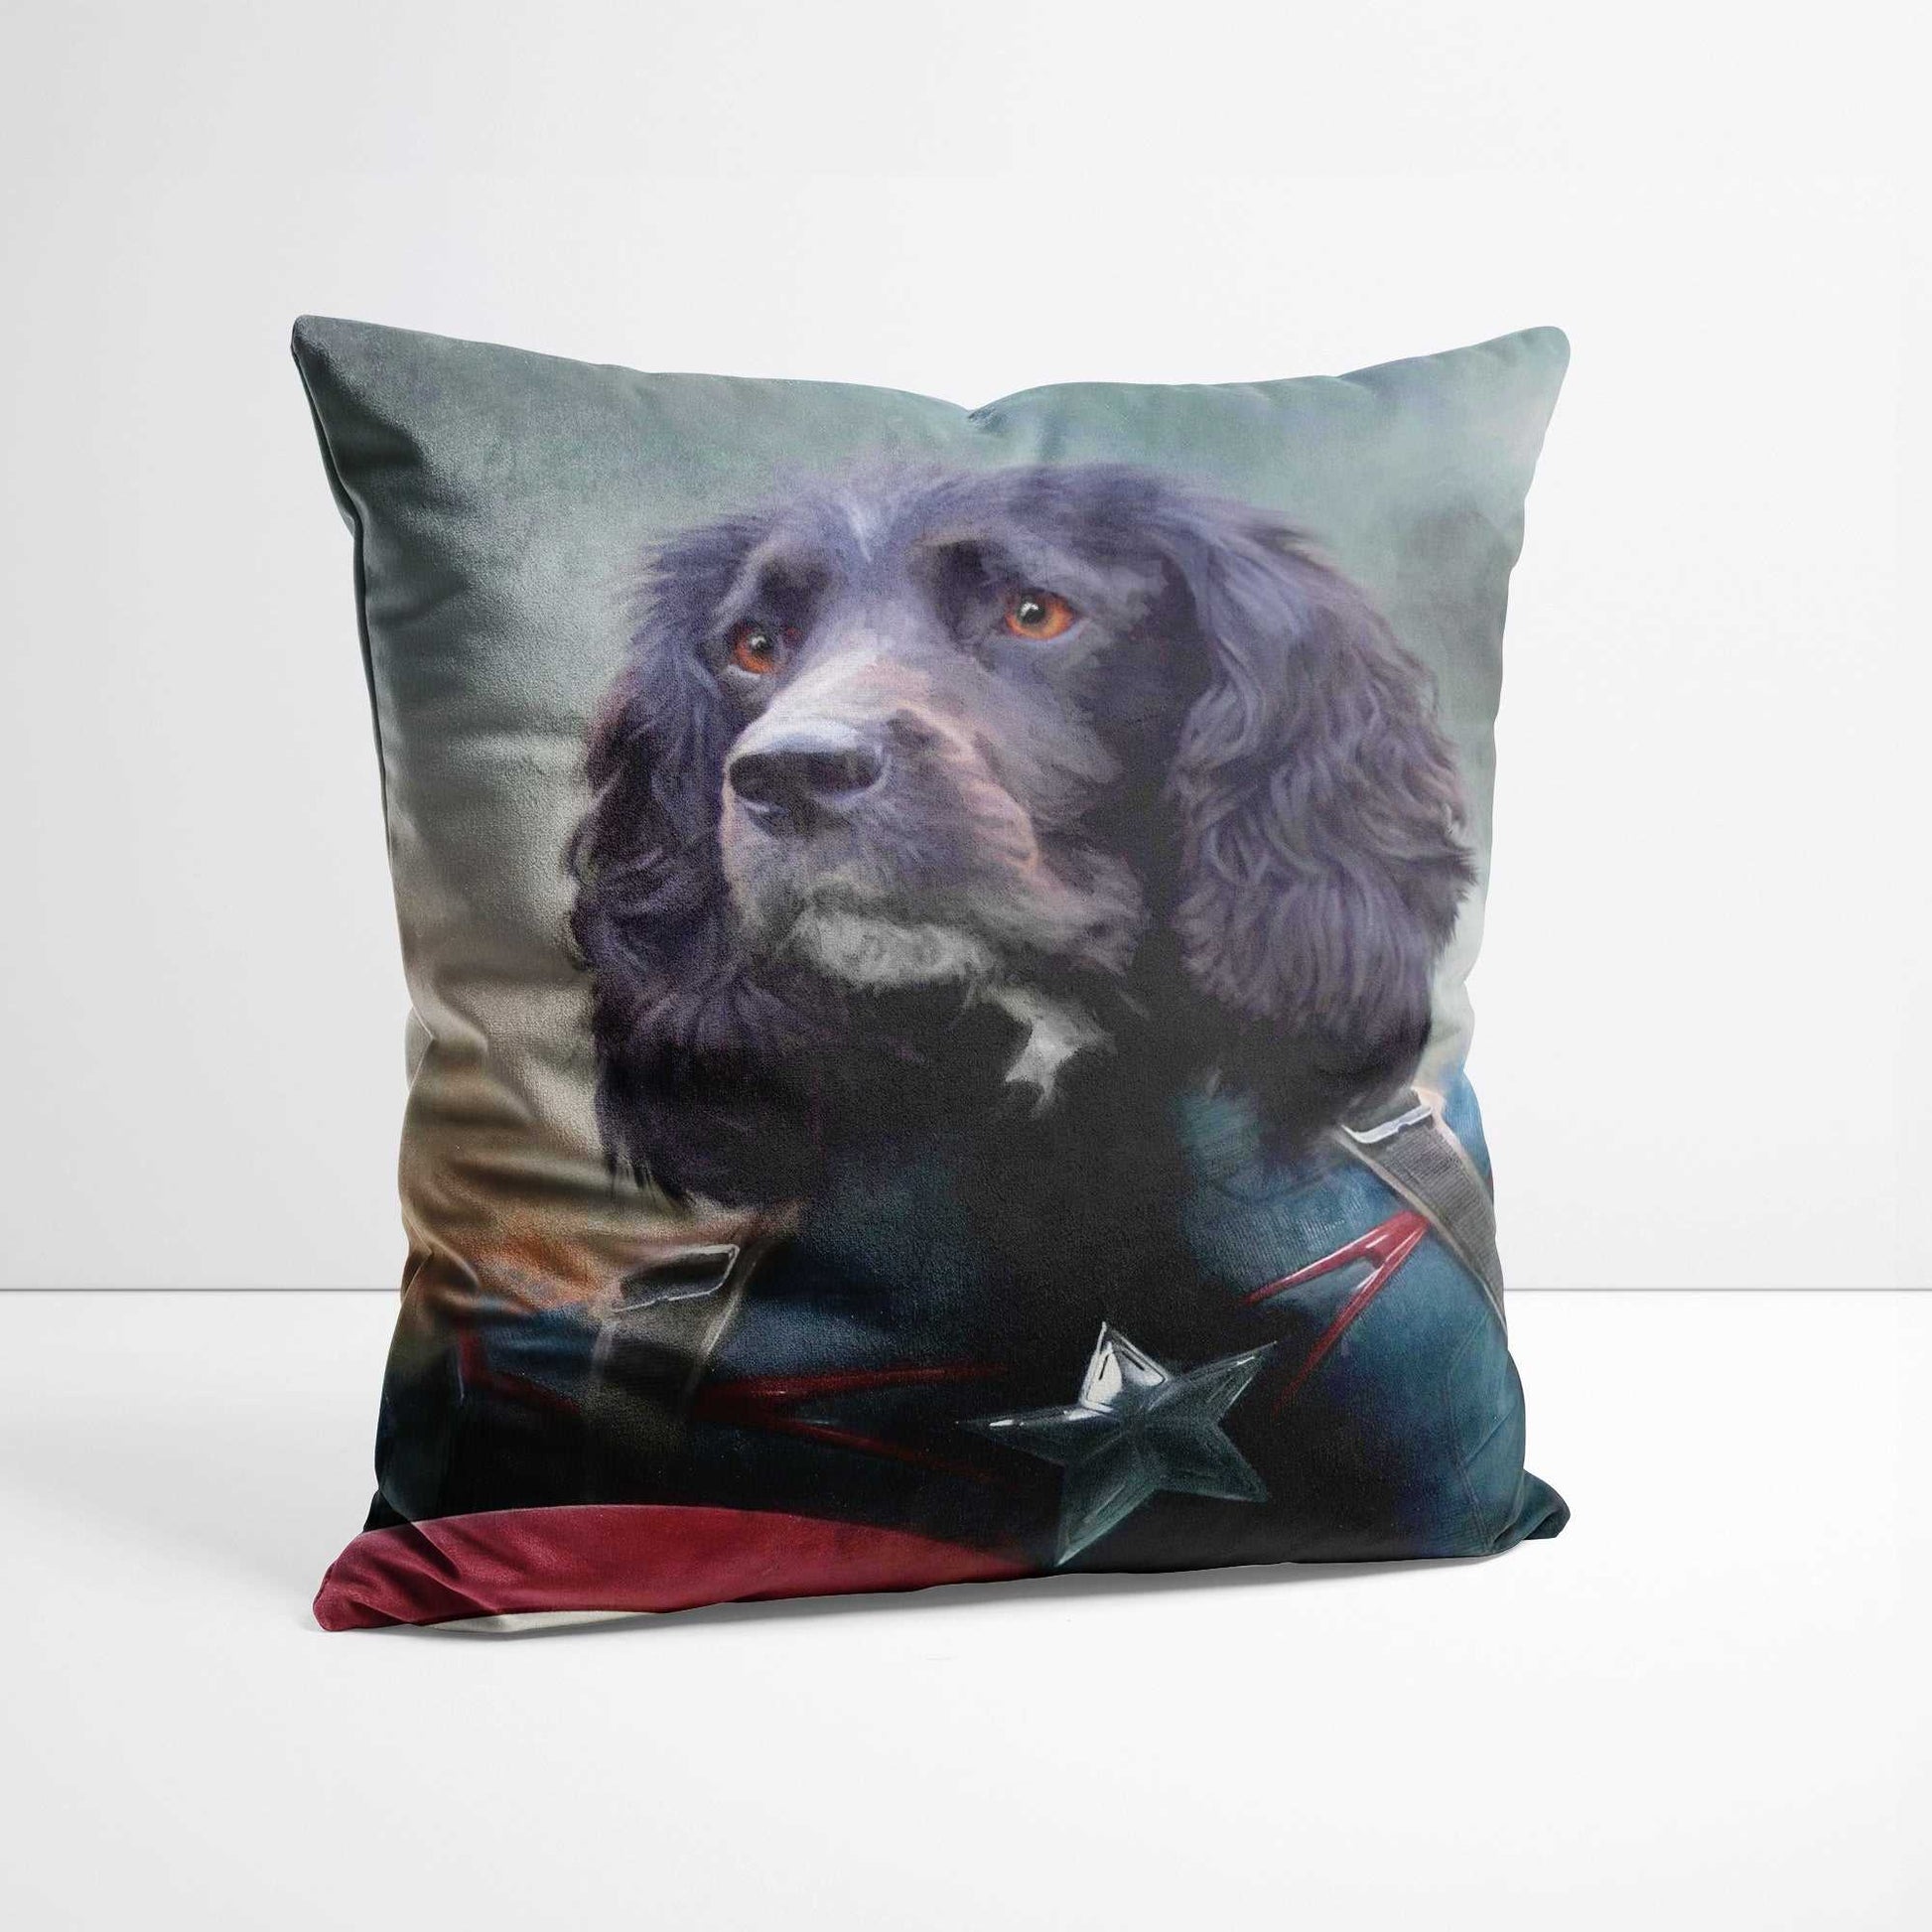 Captain - Custom Pet Portrait Cushion